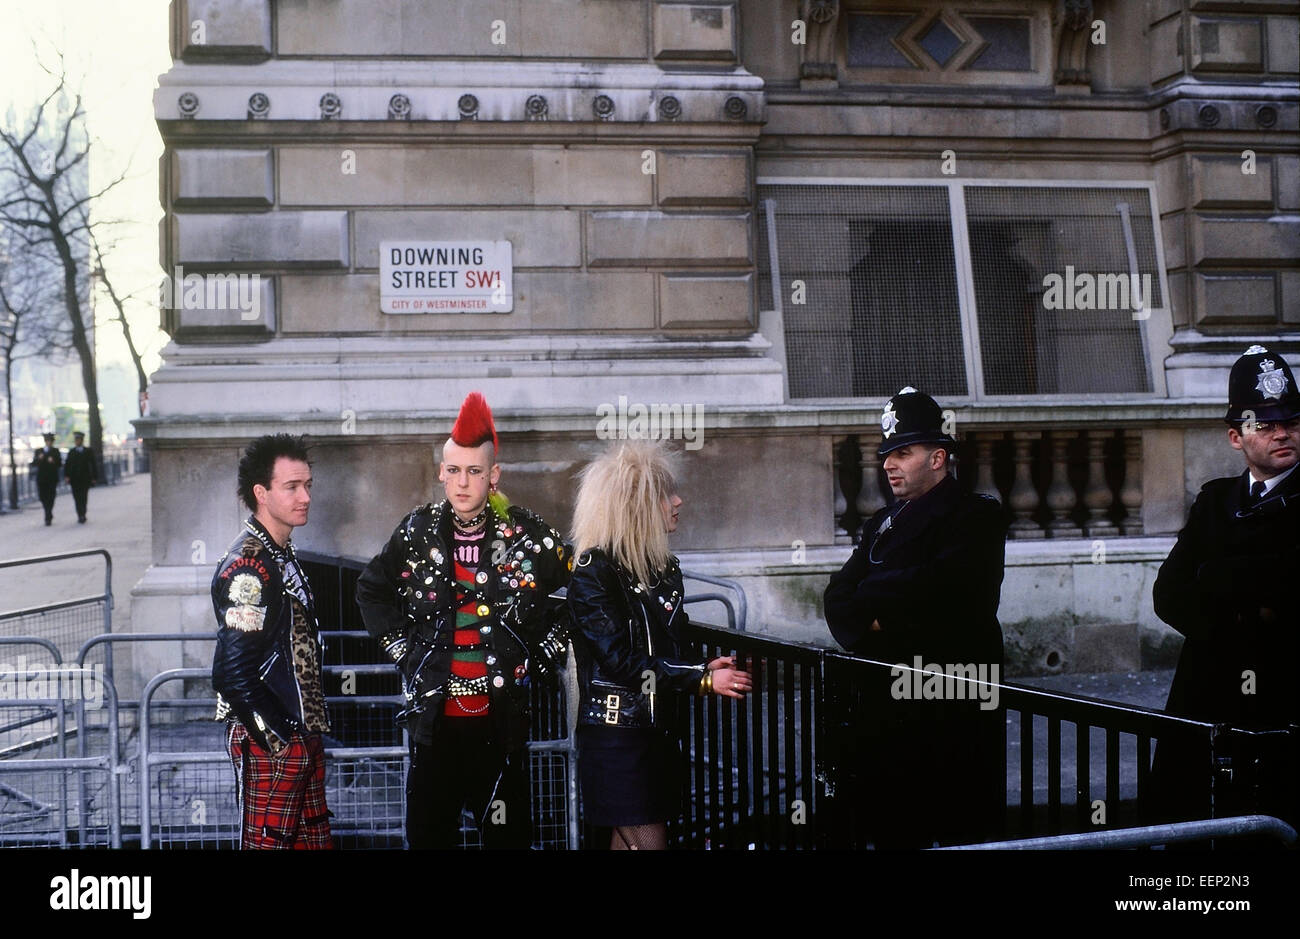 Punk rockers outside Downing Street. London. UK Stock Photo